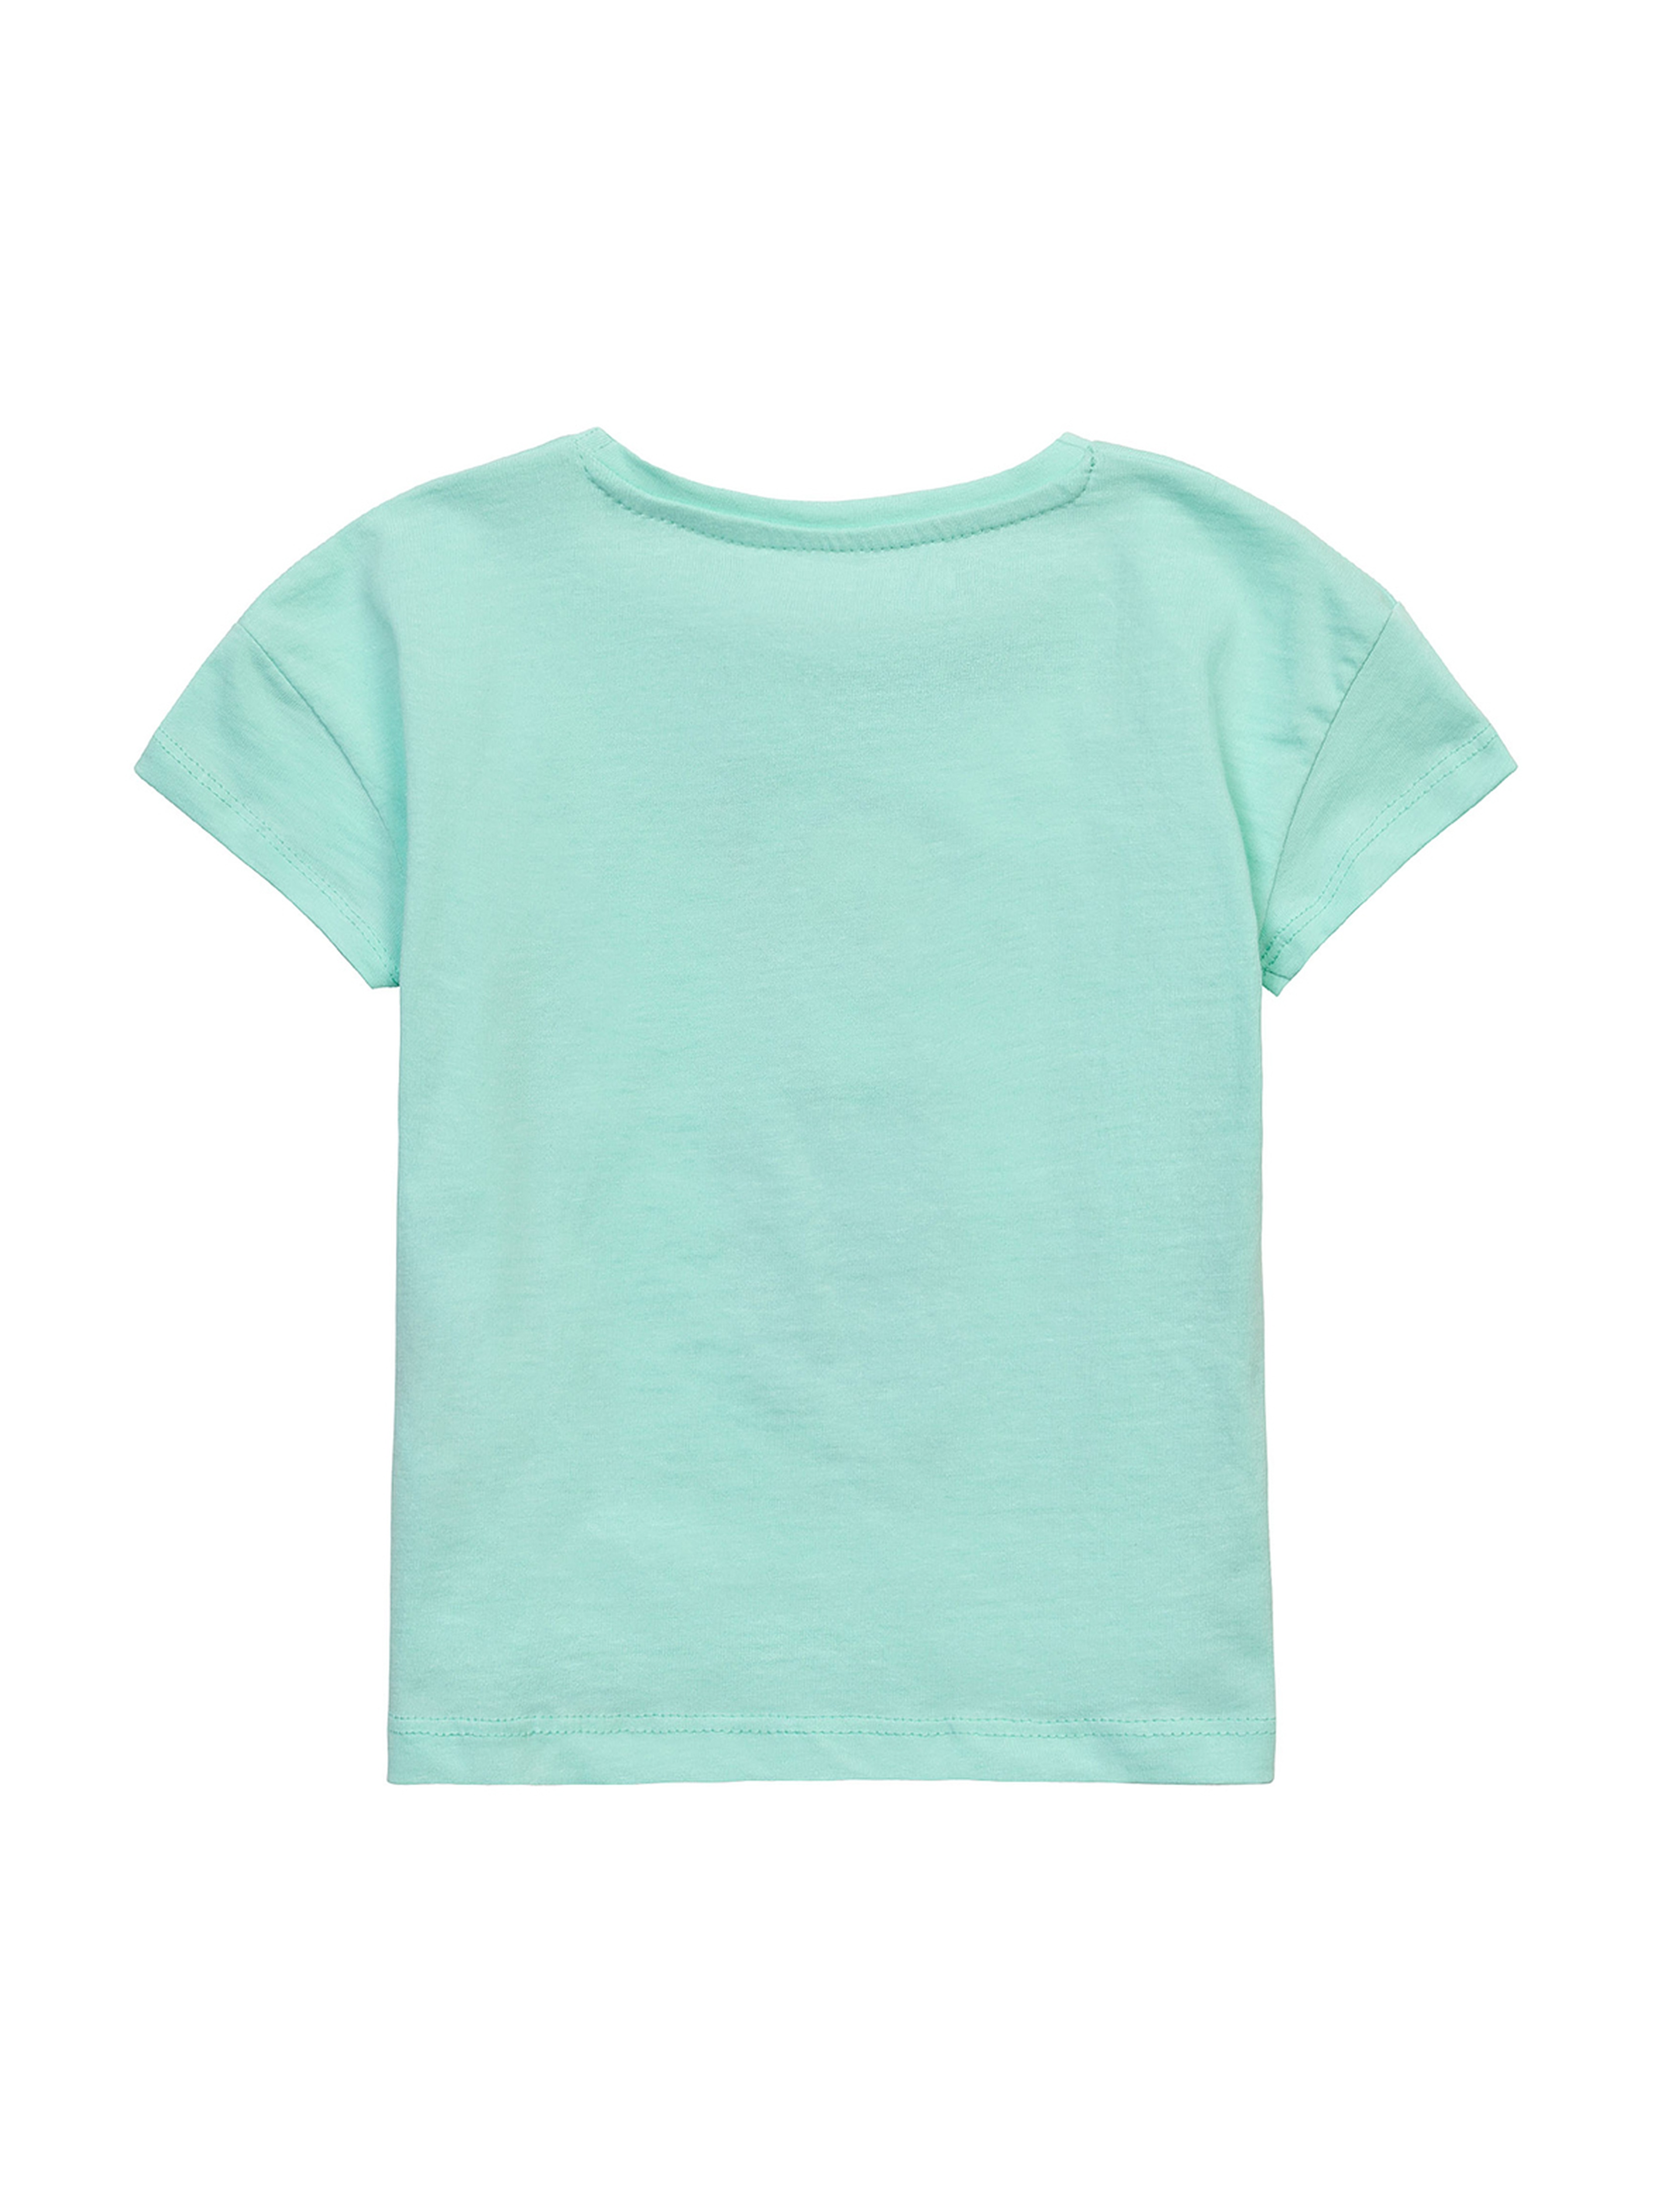 Błękitny t-shirt niemowlęcy bawełniany z nadrukiem